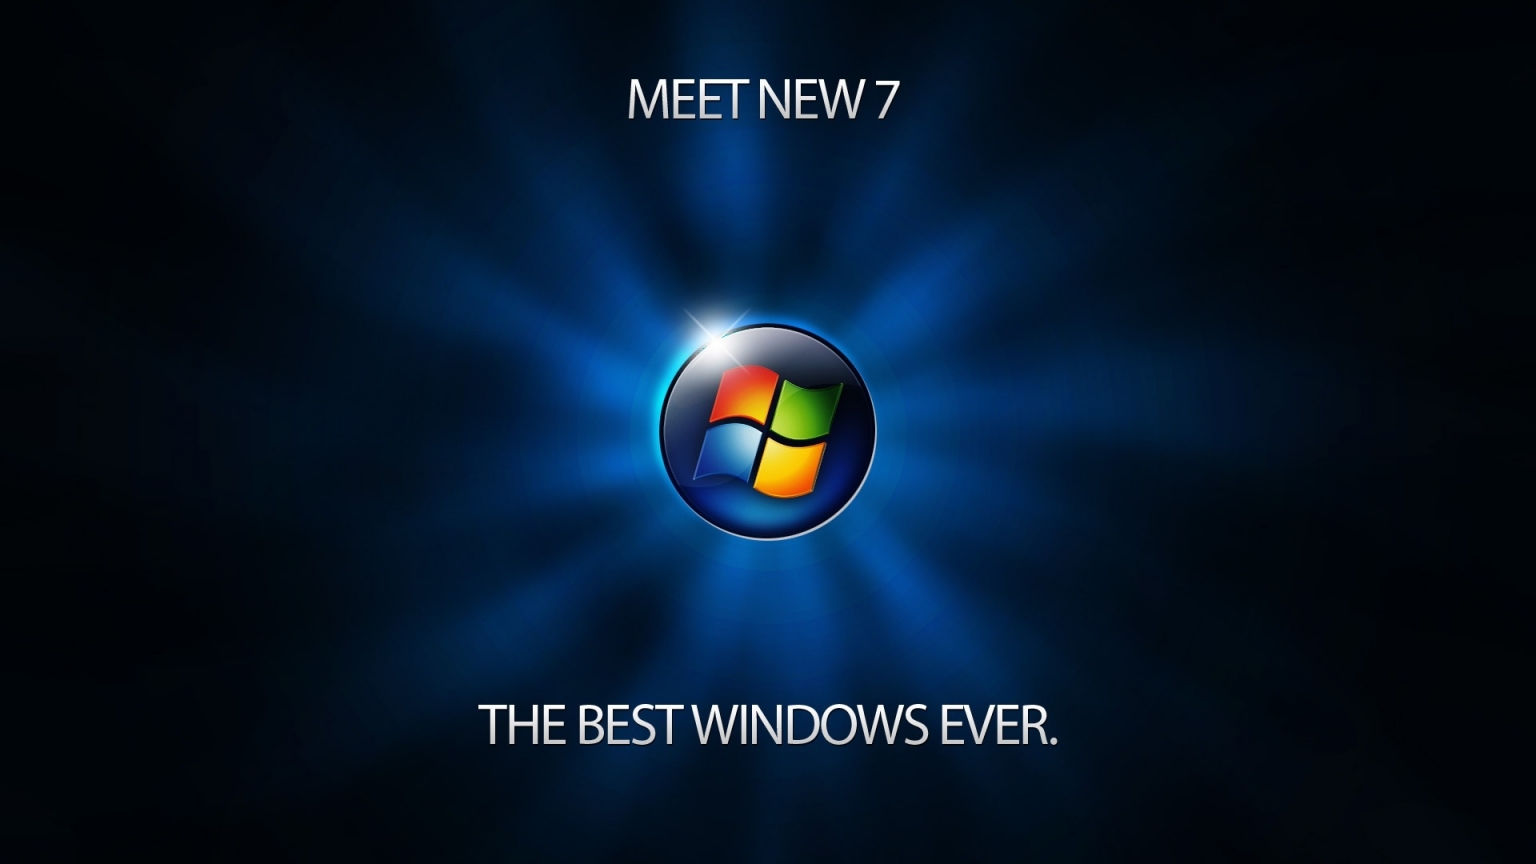 Meet Windows 7 for 1536 x 864 HDTV resolution